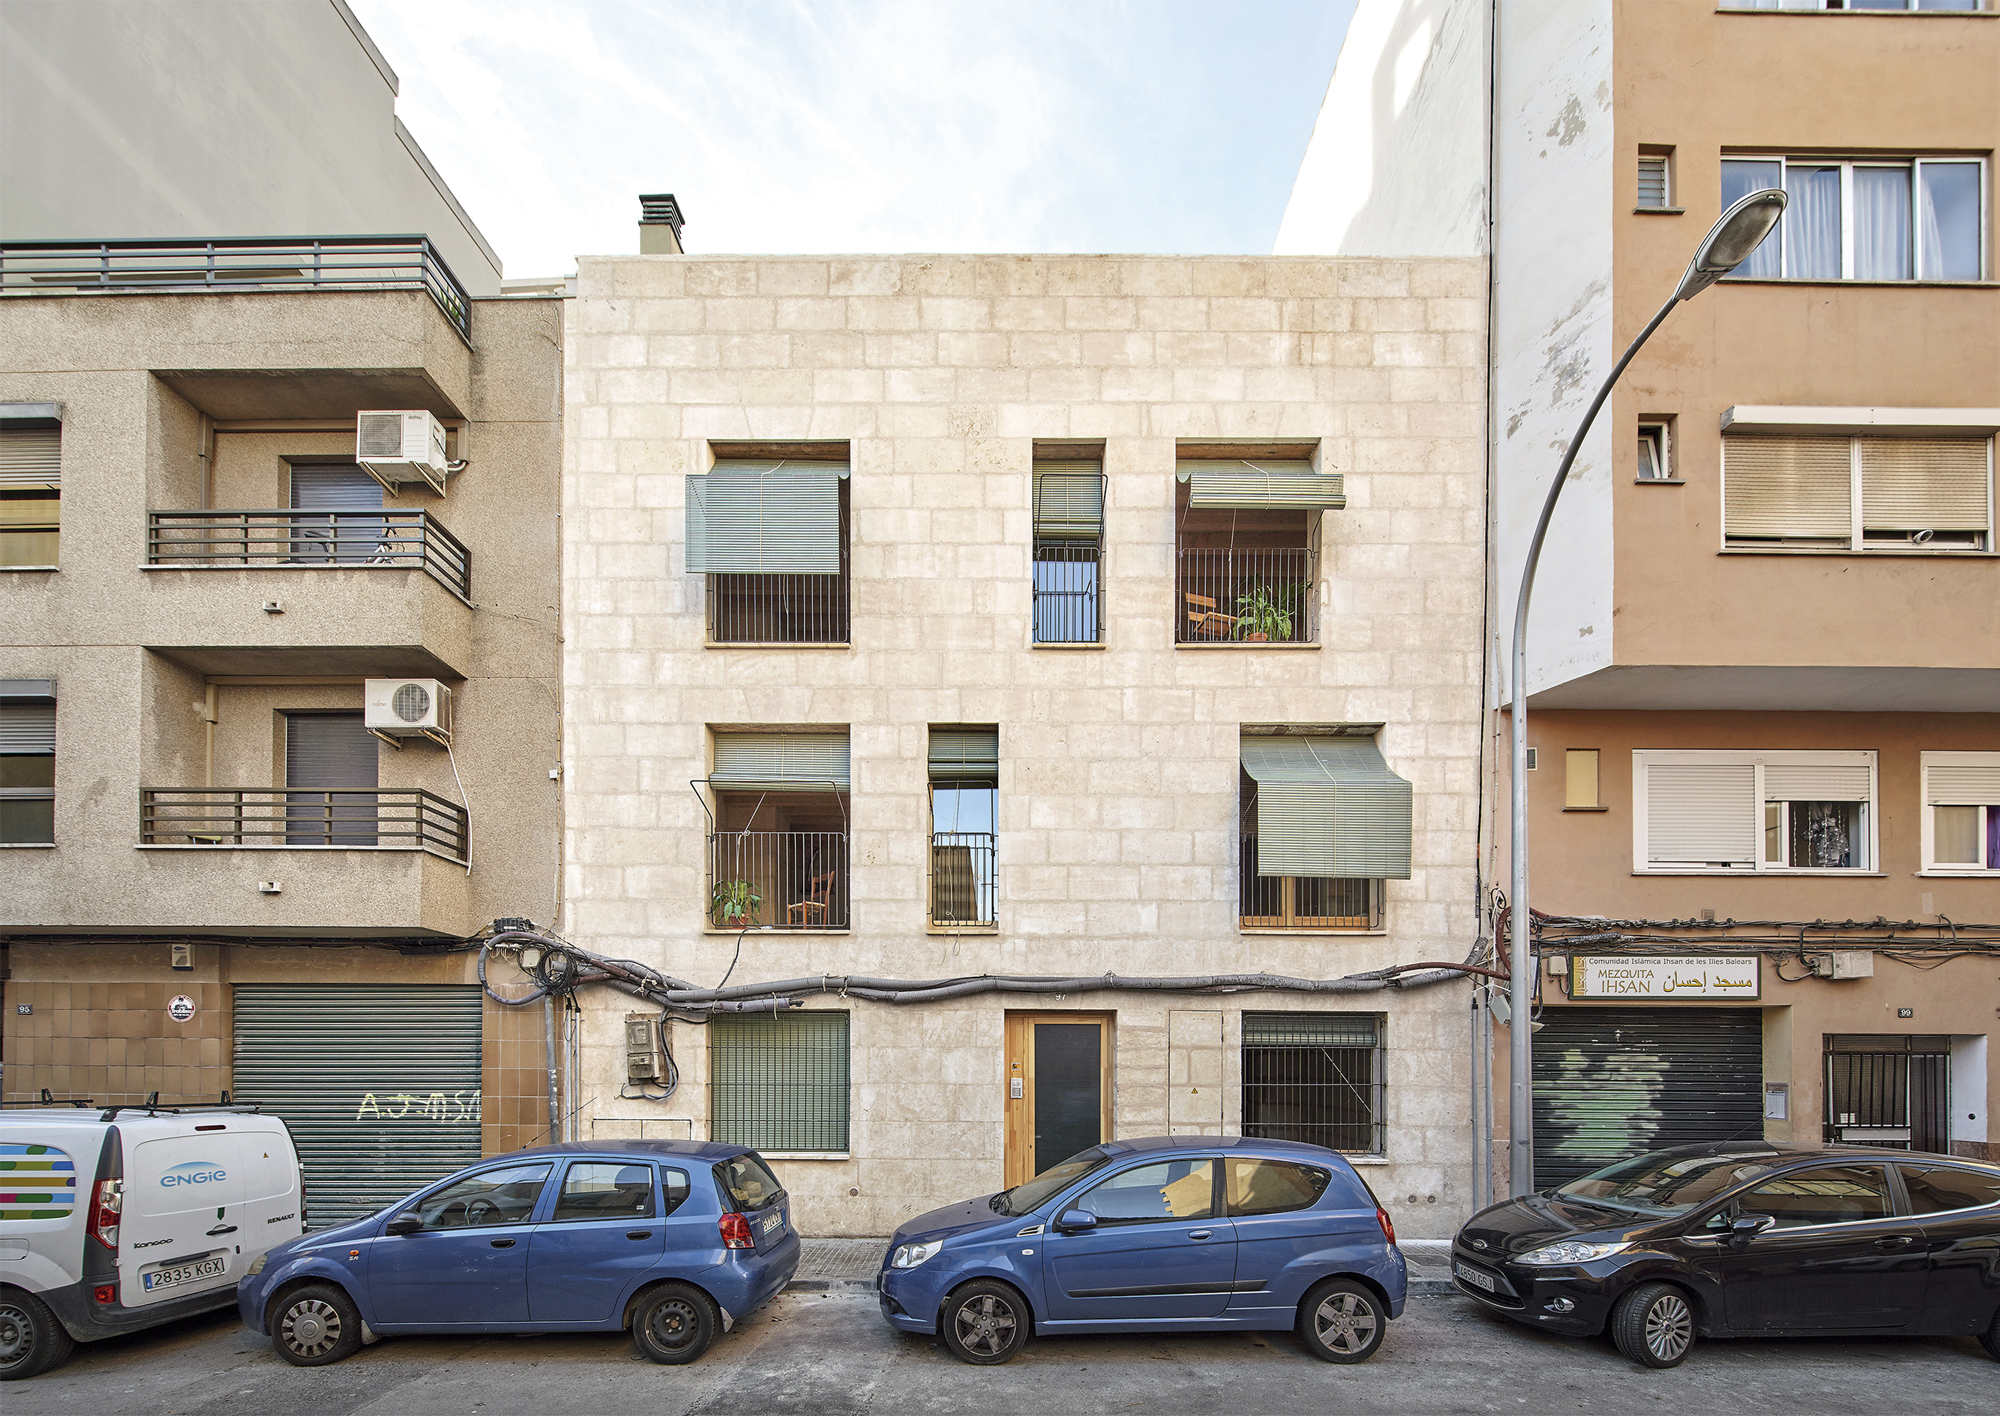 5 viviendas de protección pública en la calle Regal, Son Gotleu, Palma